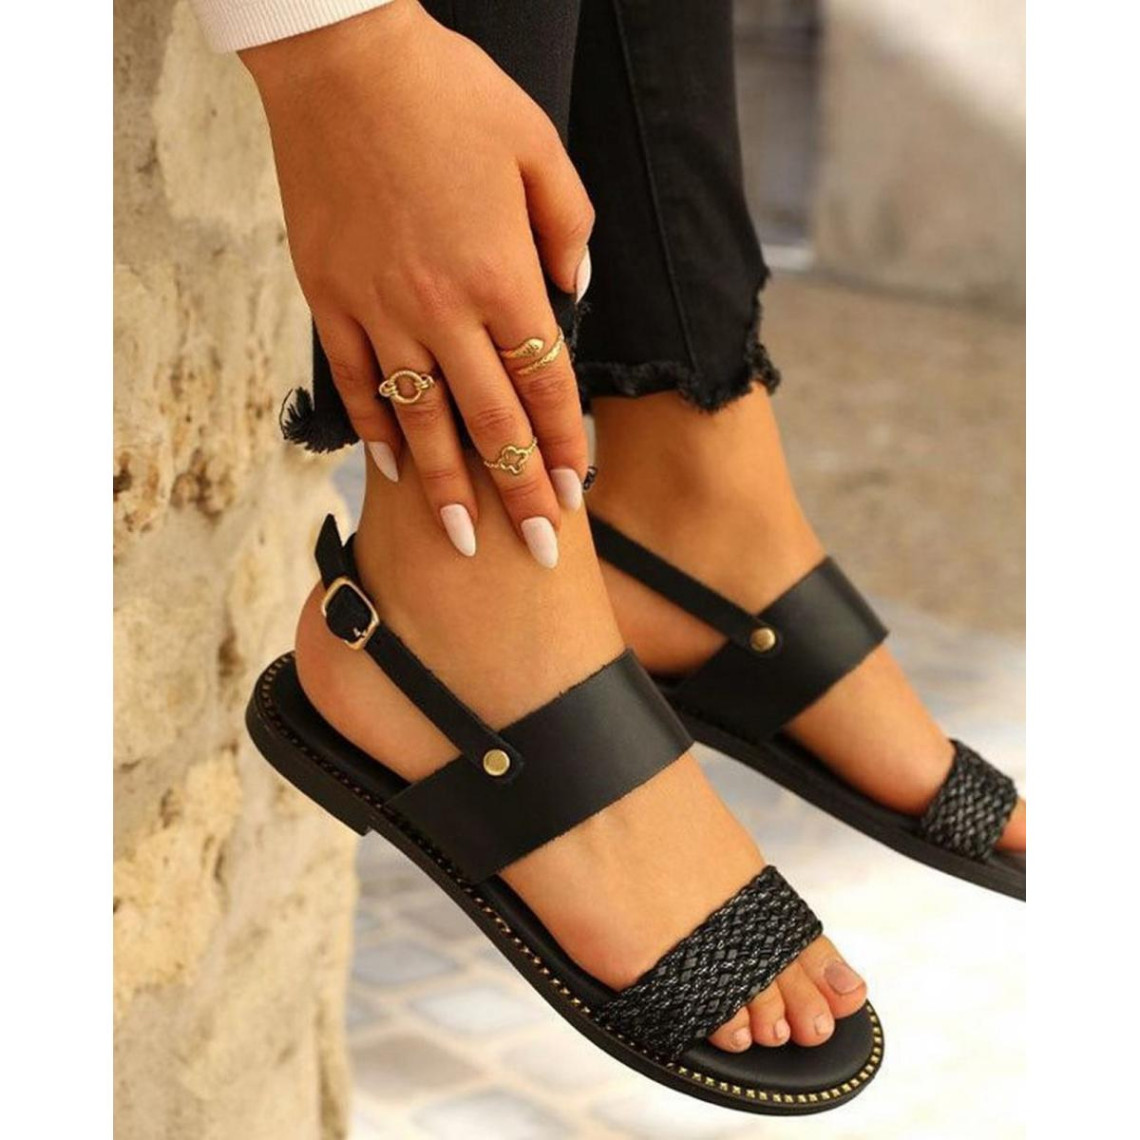 Sandales femme cuir noire